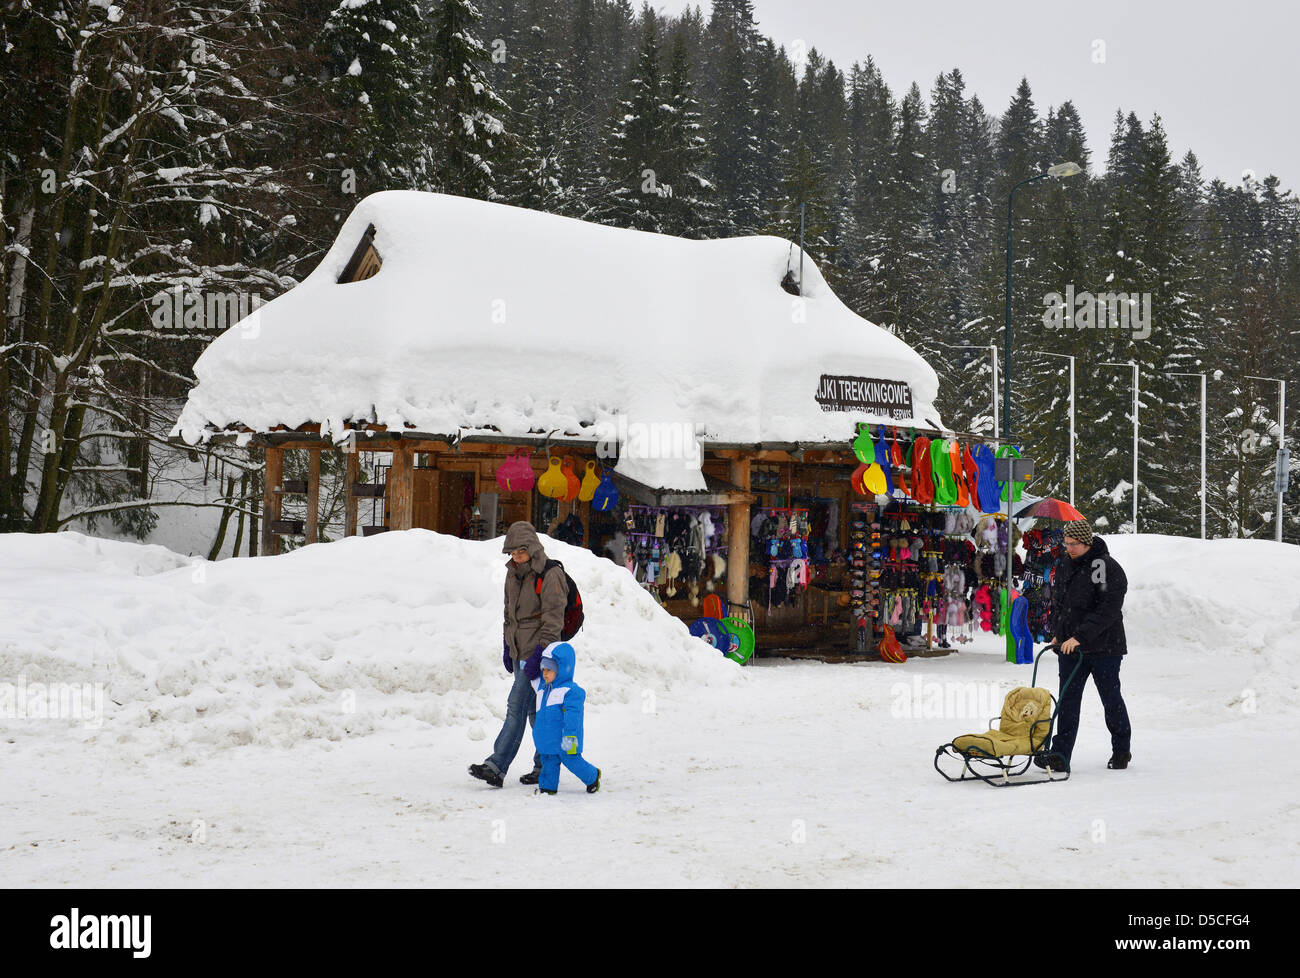 Boutique touristique dans la neige à Zakopane, Pologne Banque D'Images